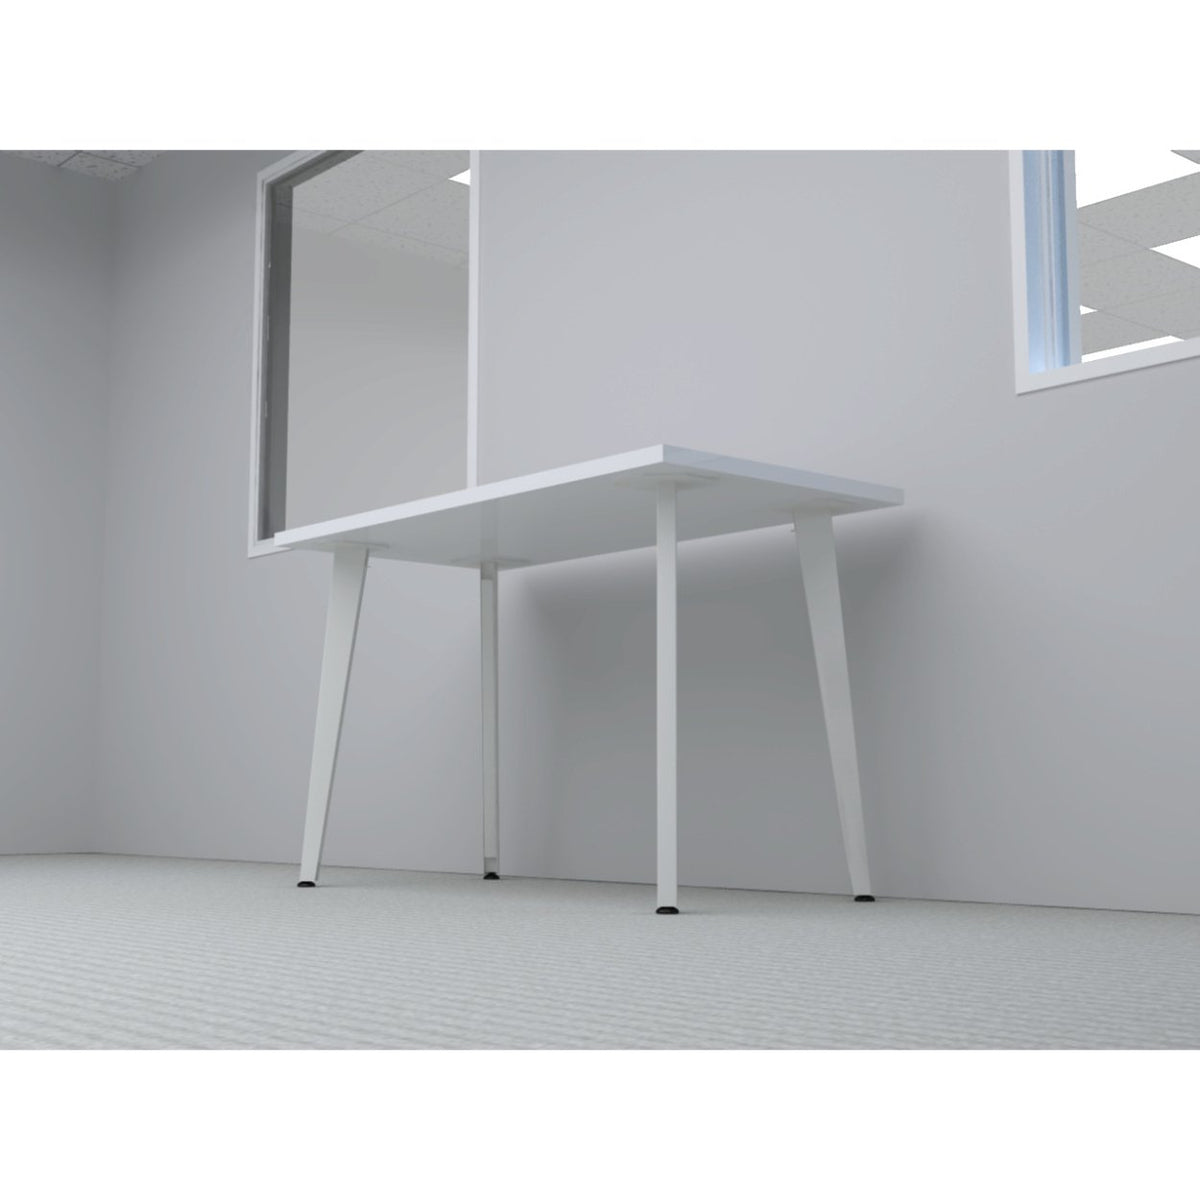 HON - Voi Desk - Duckys Office Furniture